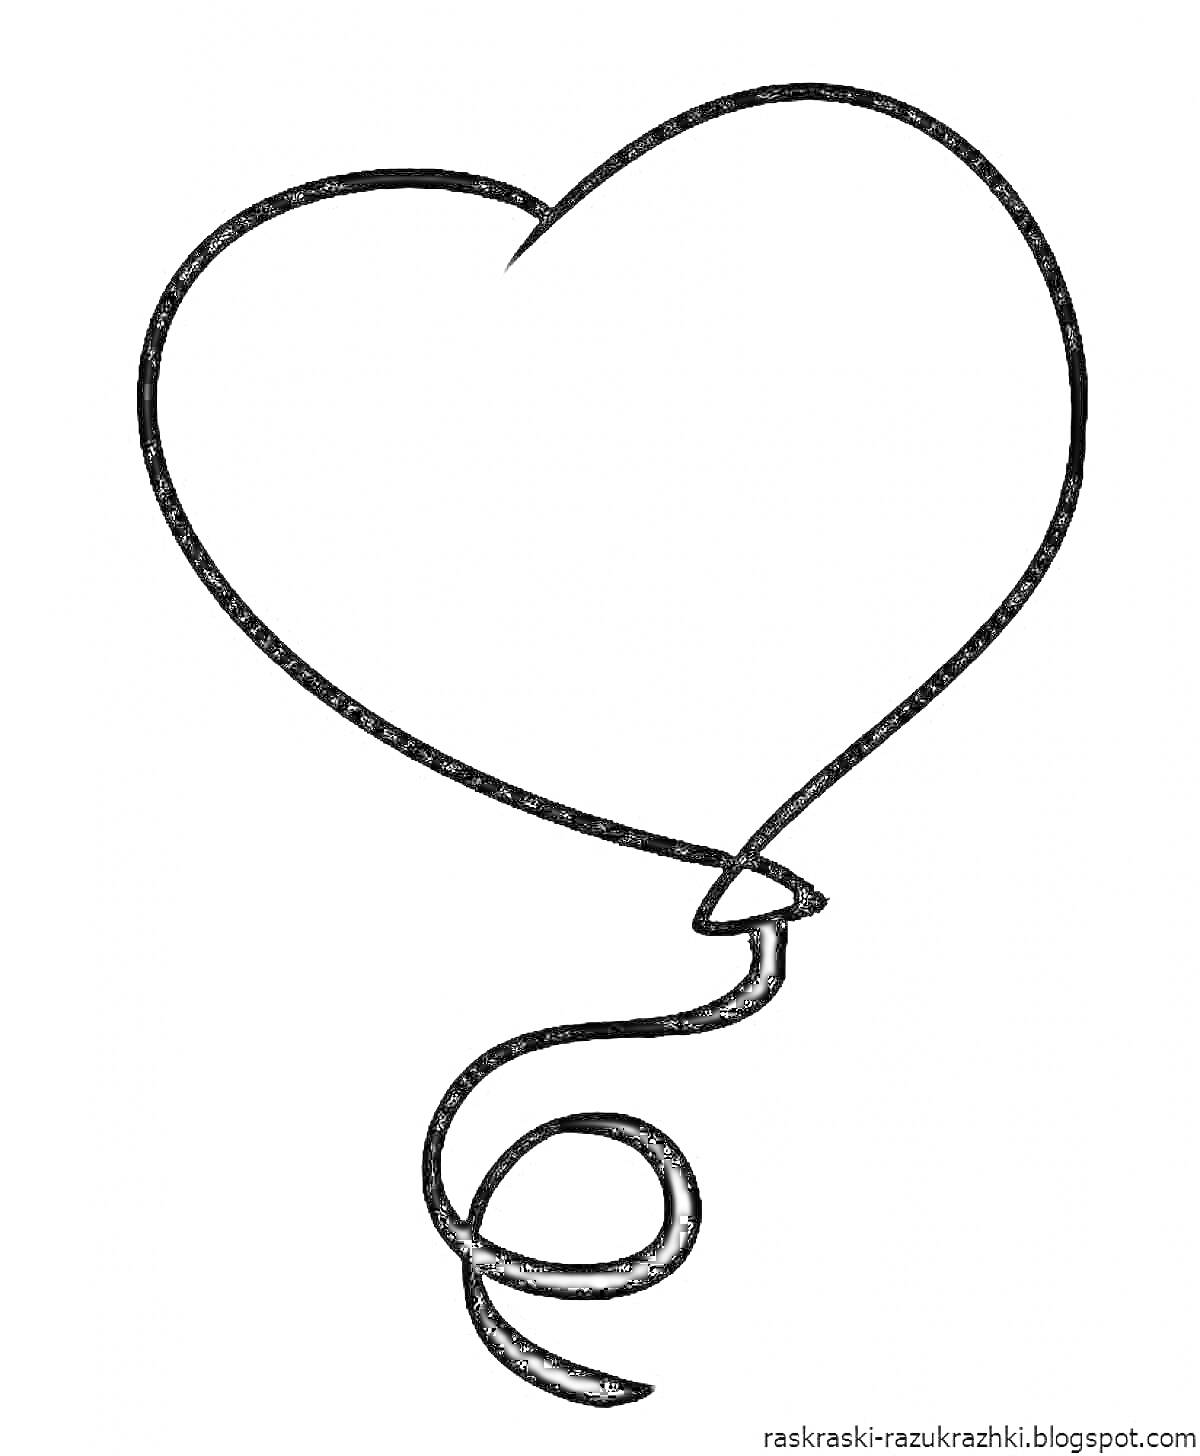 Шарик в форме сердца с заостренной нижней частью и закрученным шнуром